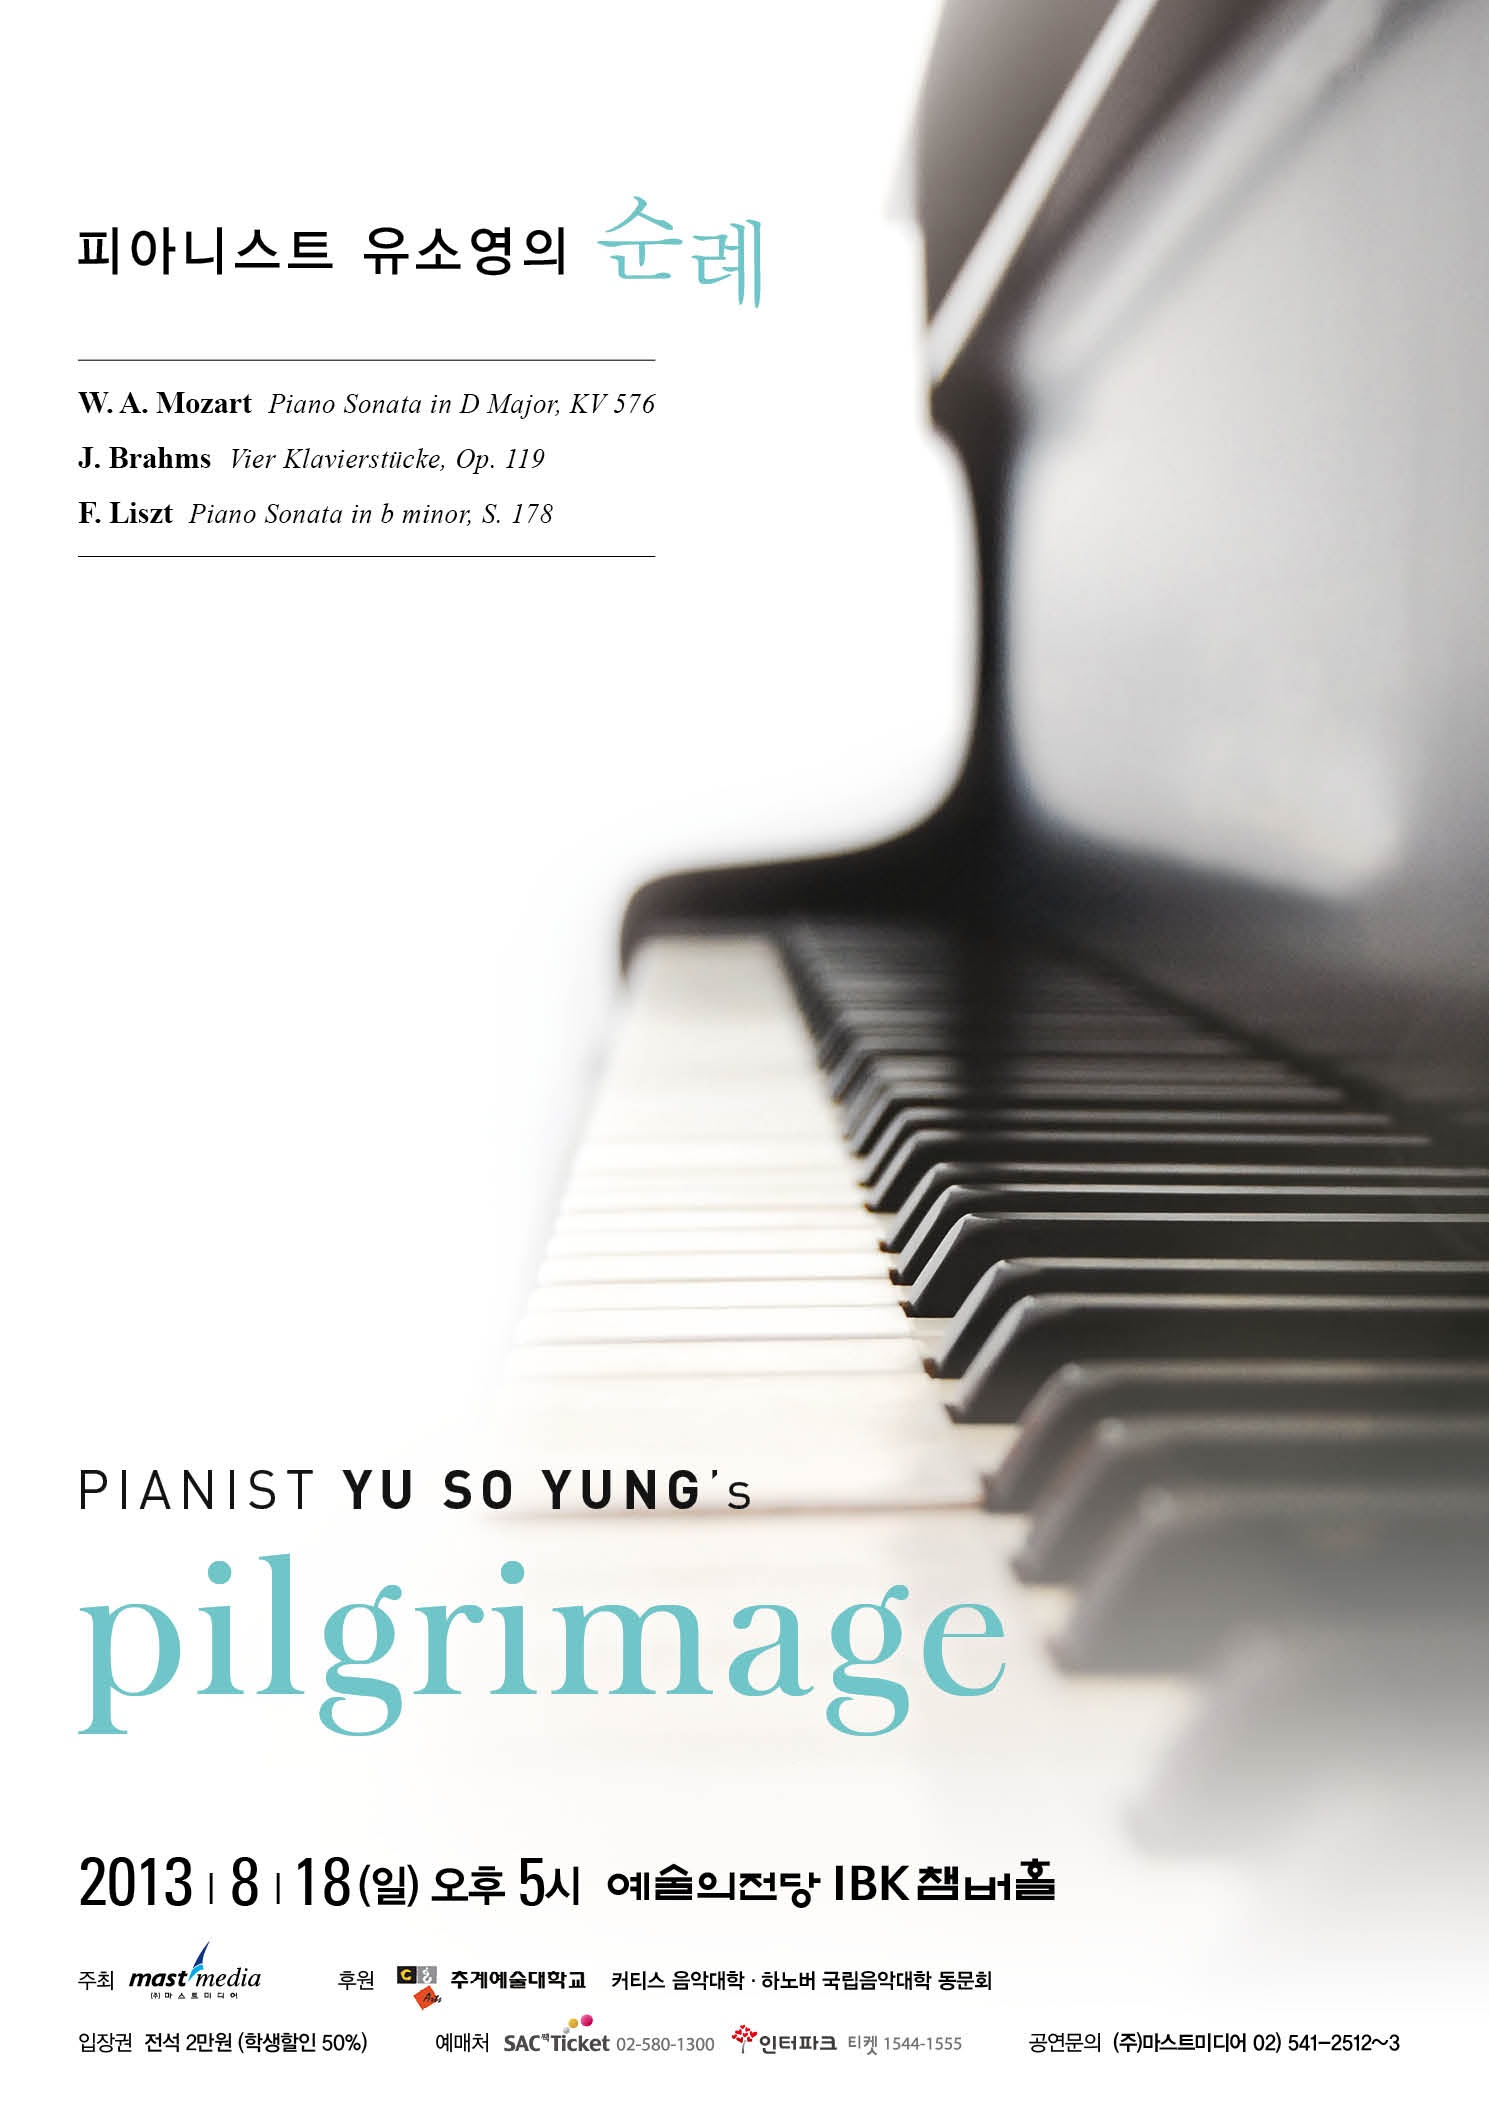 [08.18] 피아니스트 유소영의 순례 - pianist yusoyung’s pilgrimage 이미지